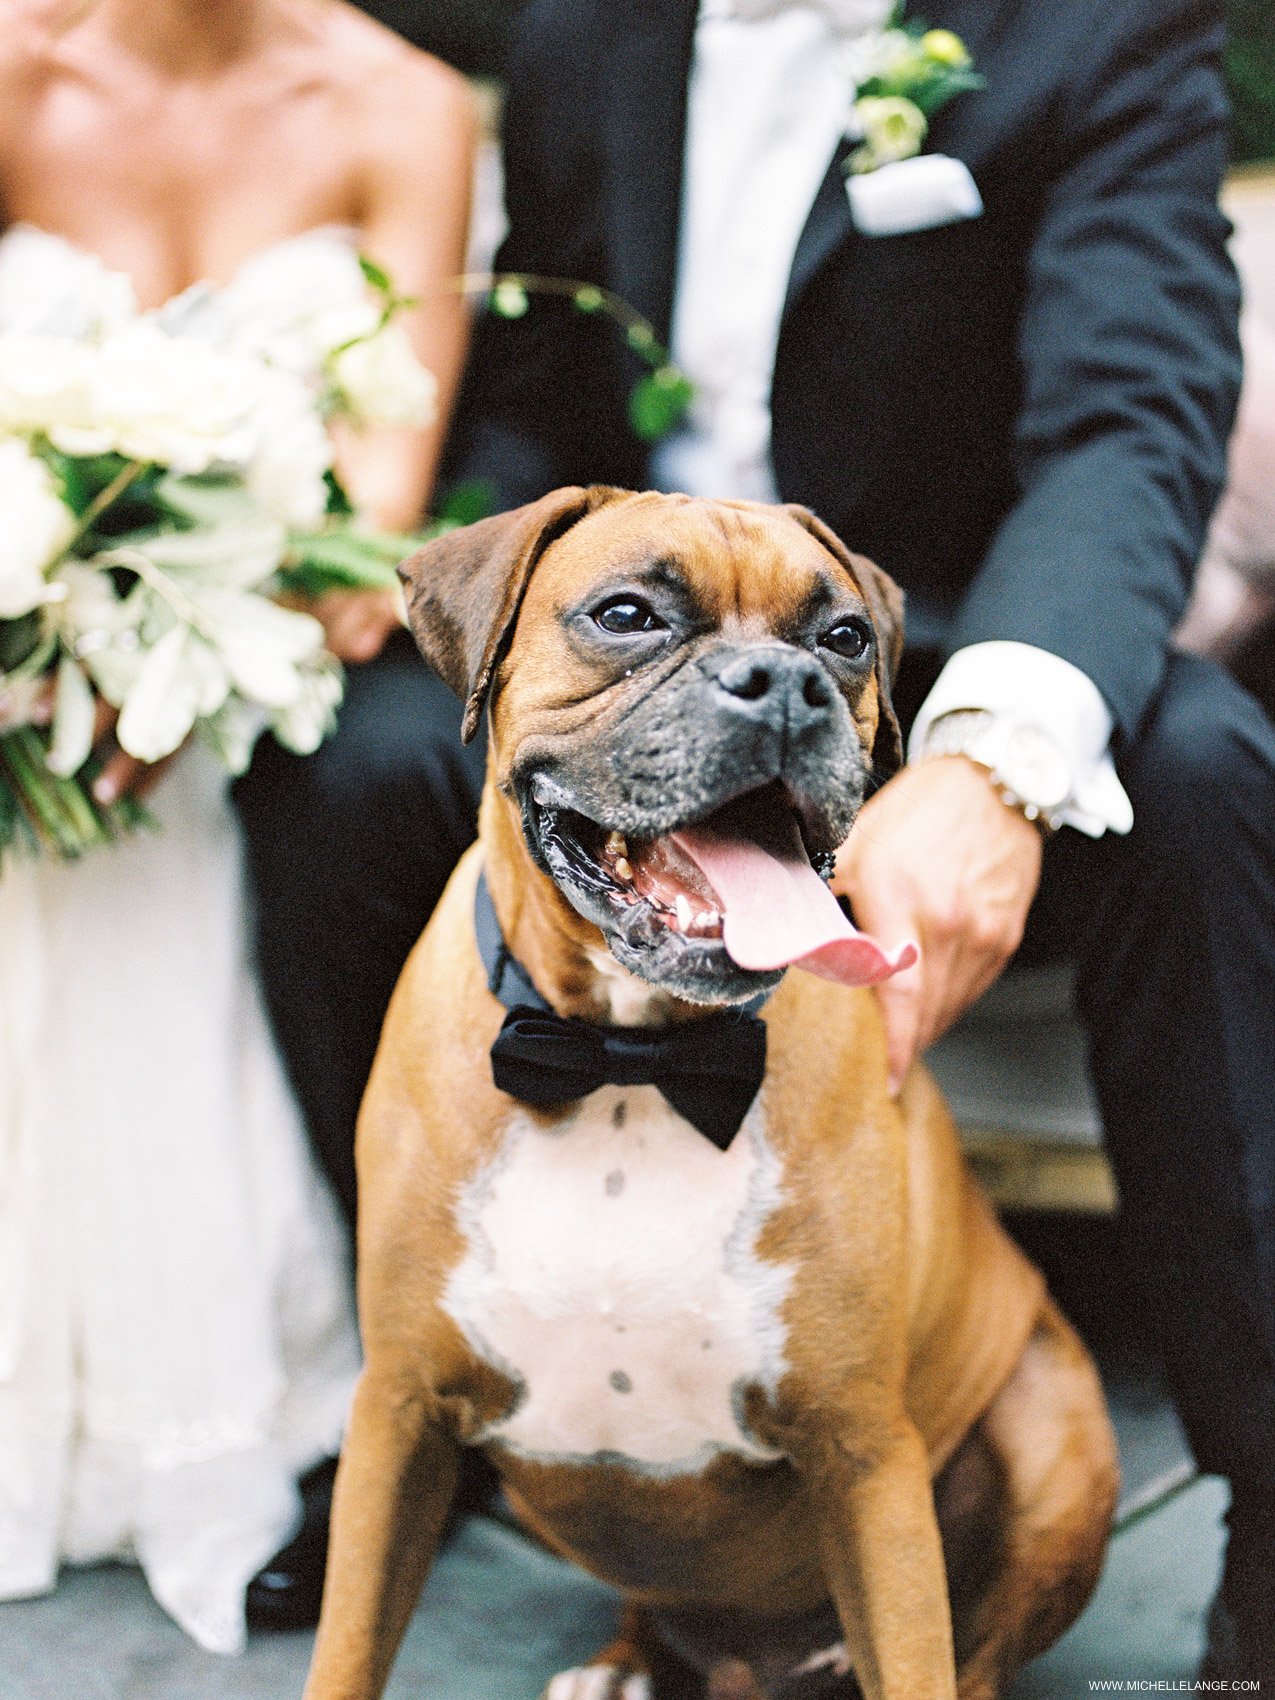 NY Wedding Photographer with Dog at Wedding